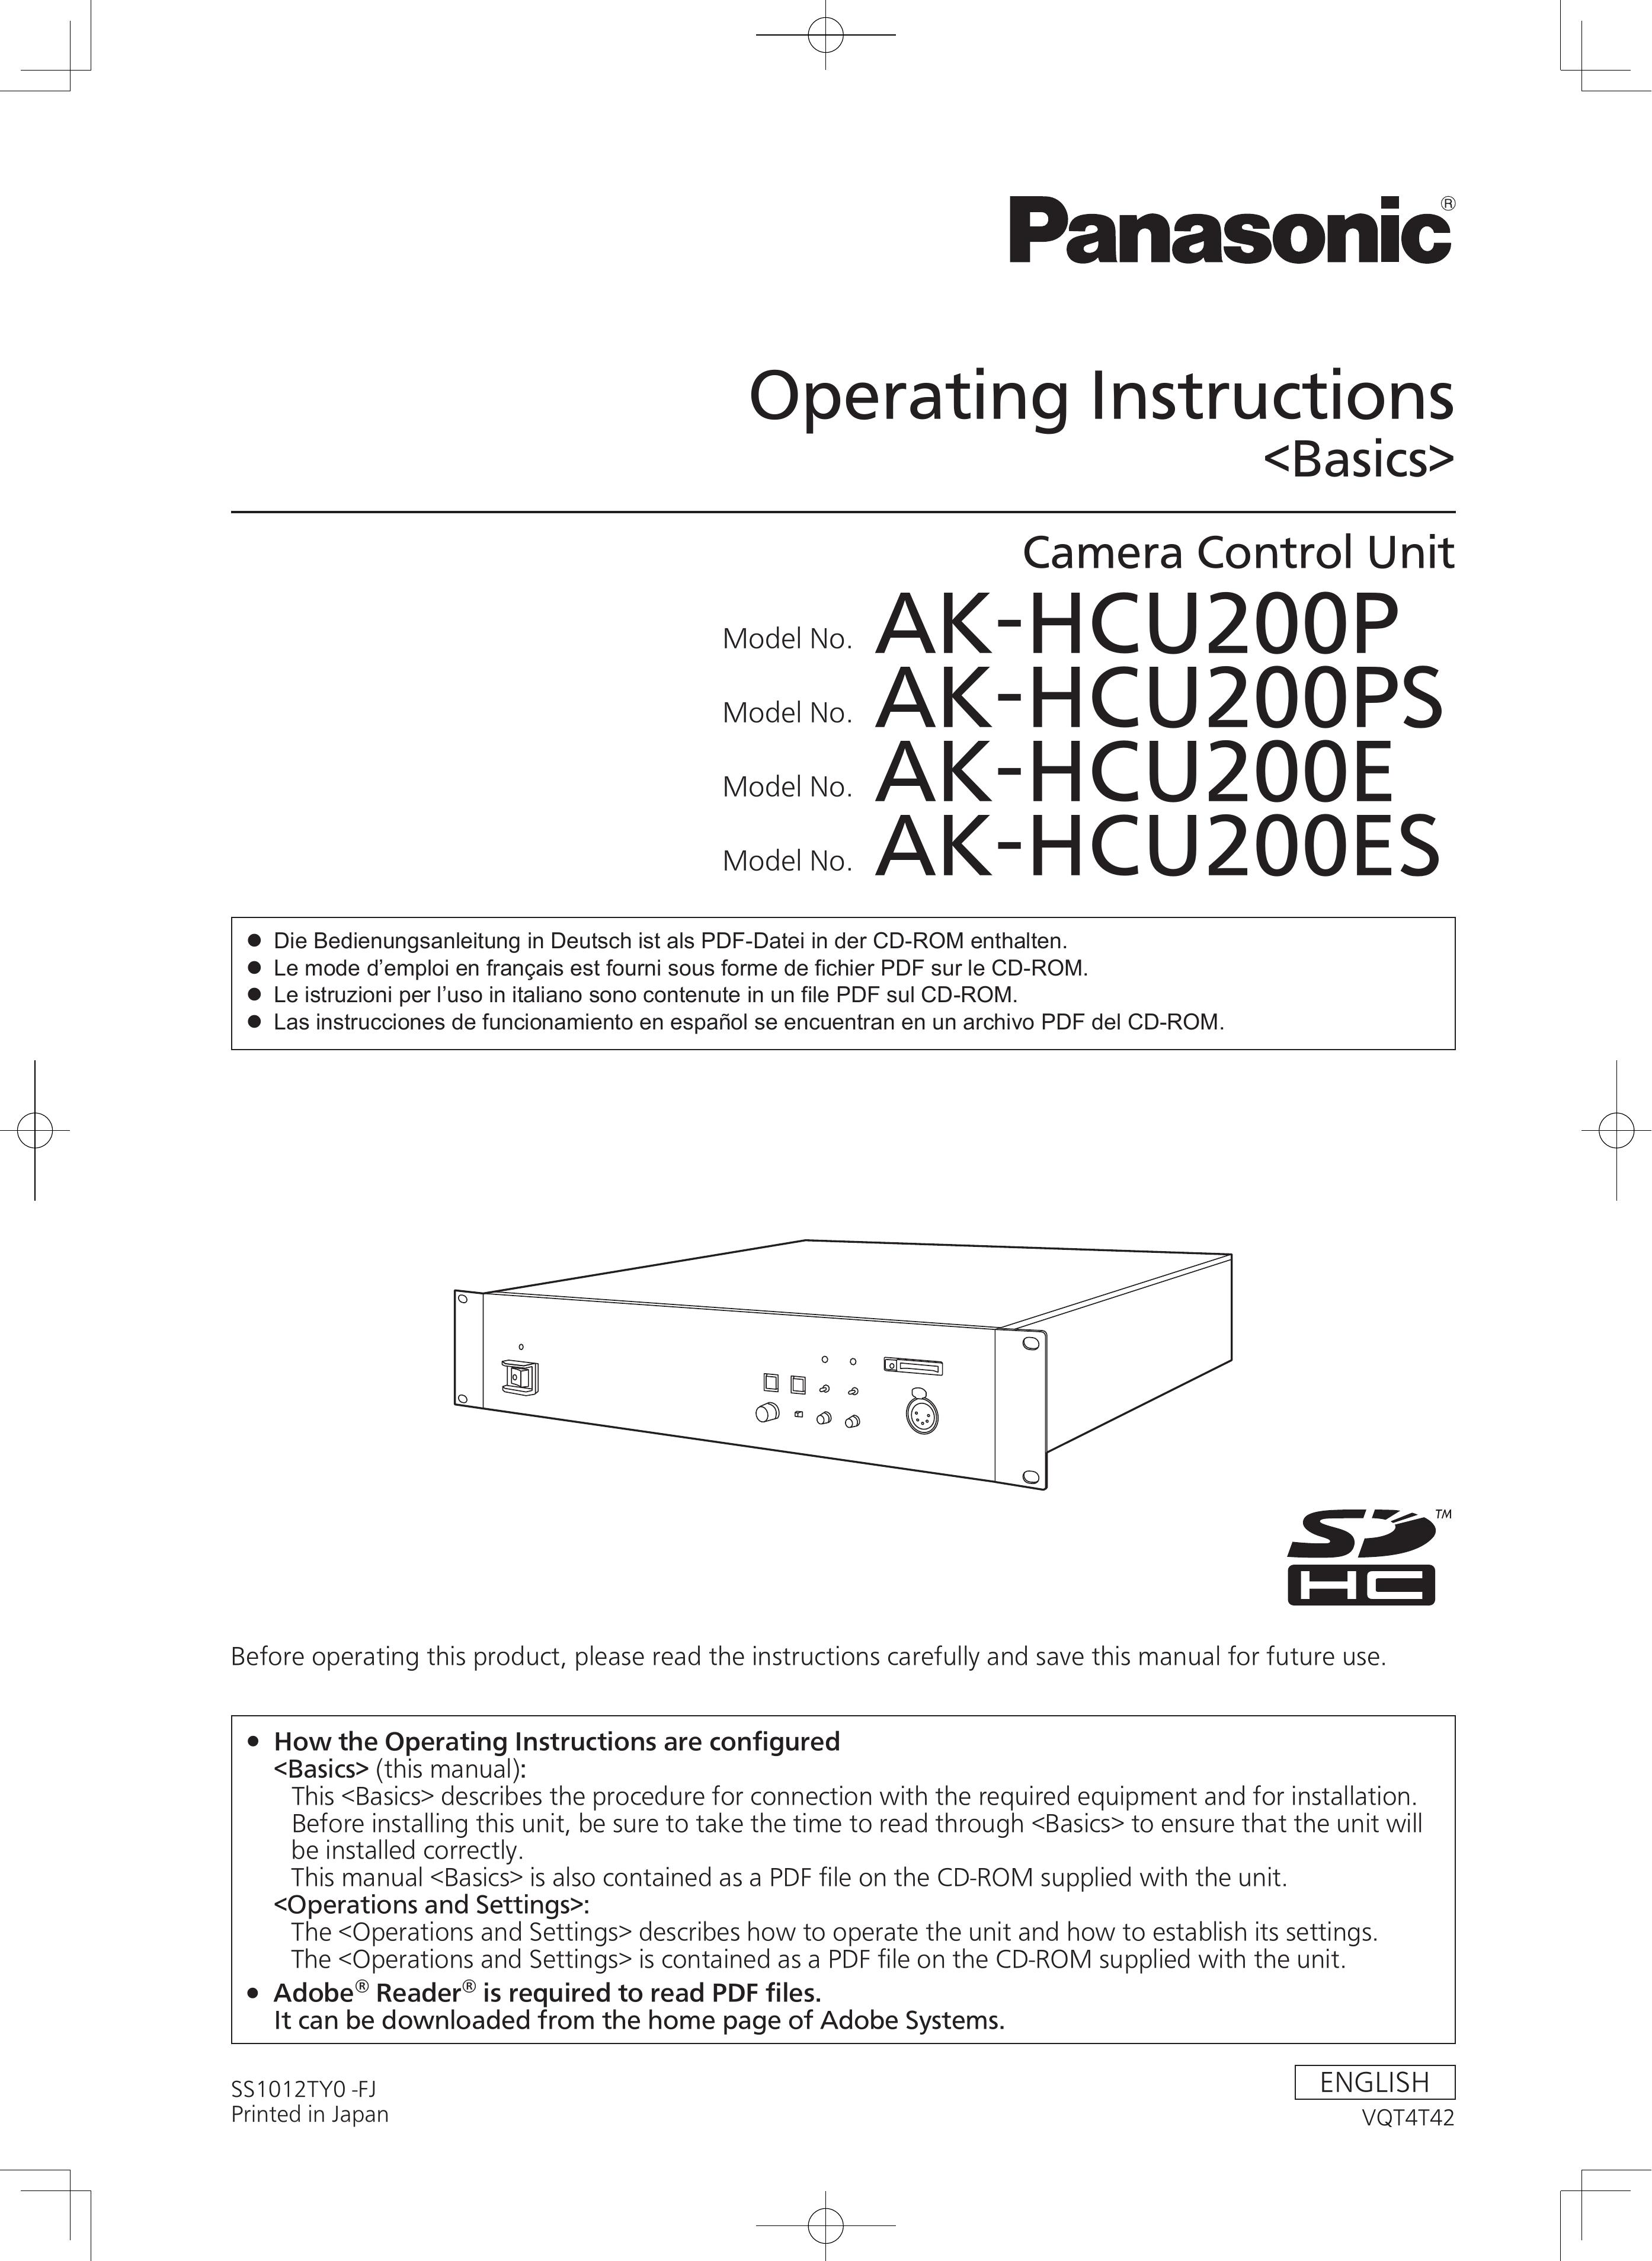 Panasonic AK-HCU200E Camera Accessories User Manual